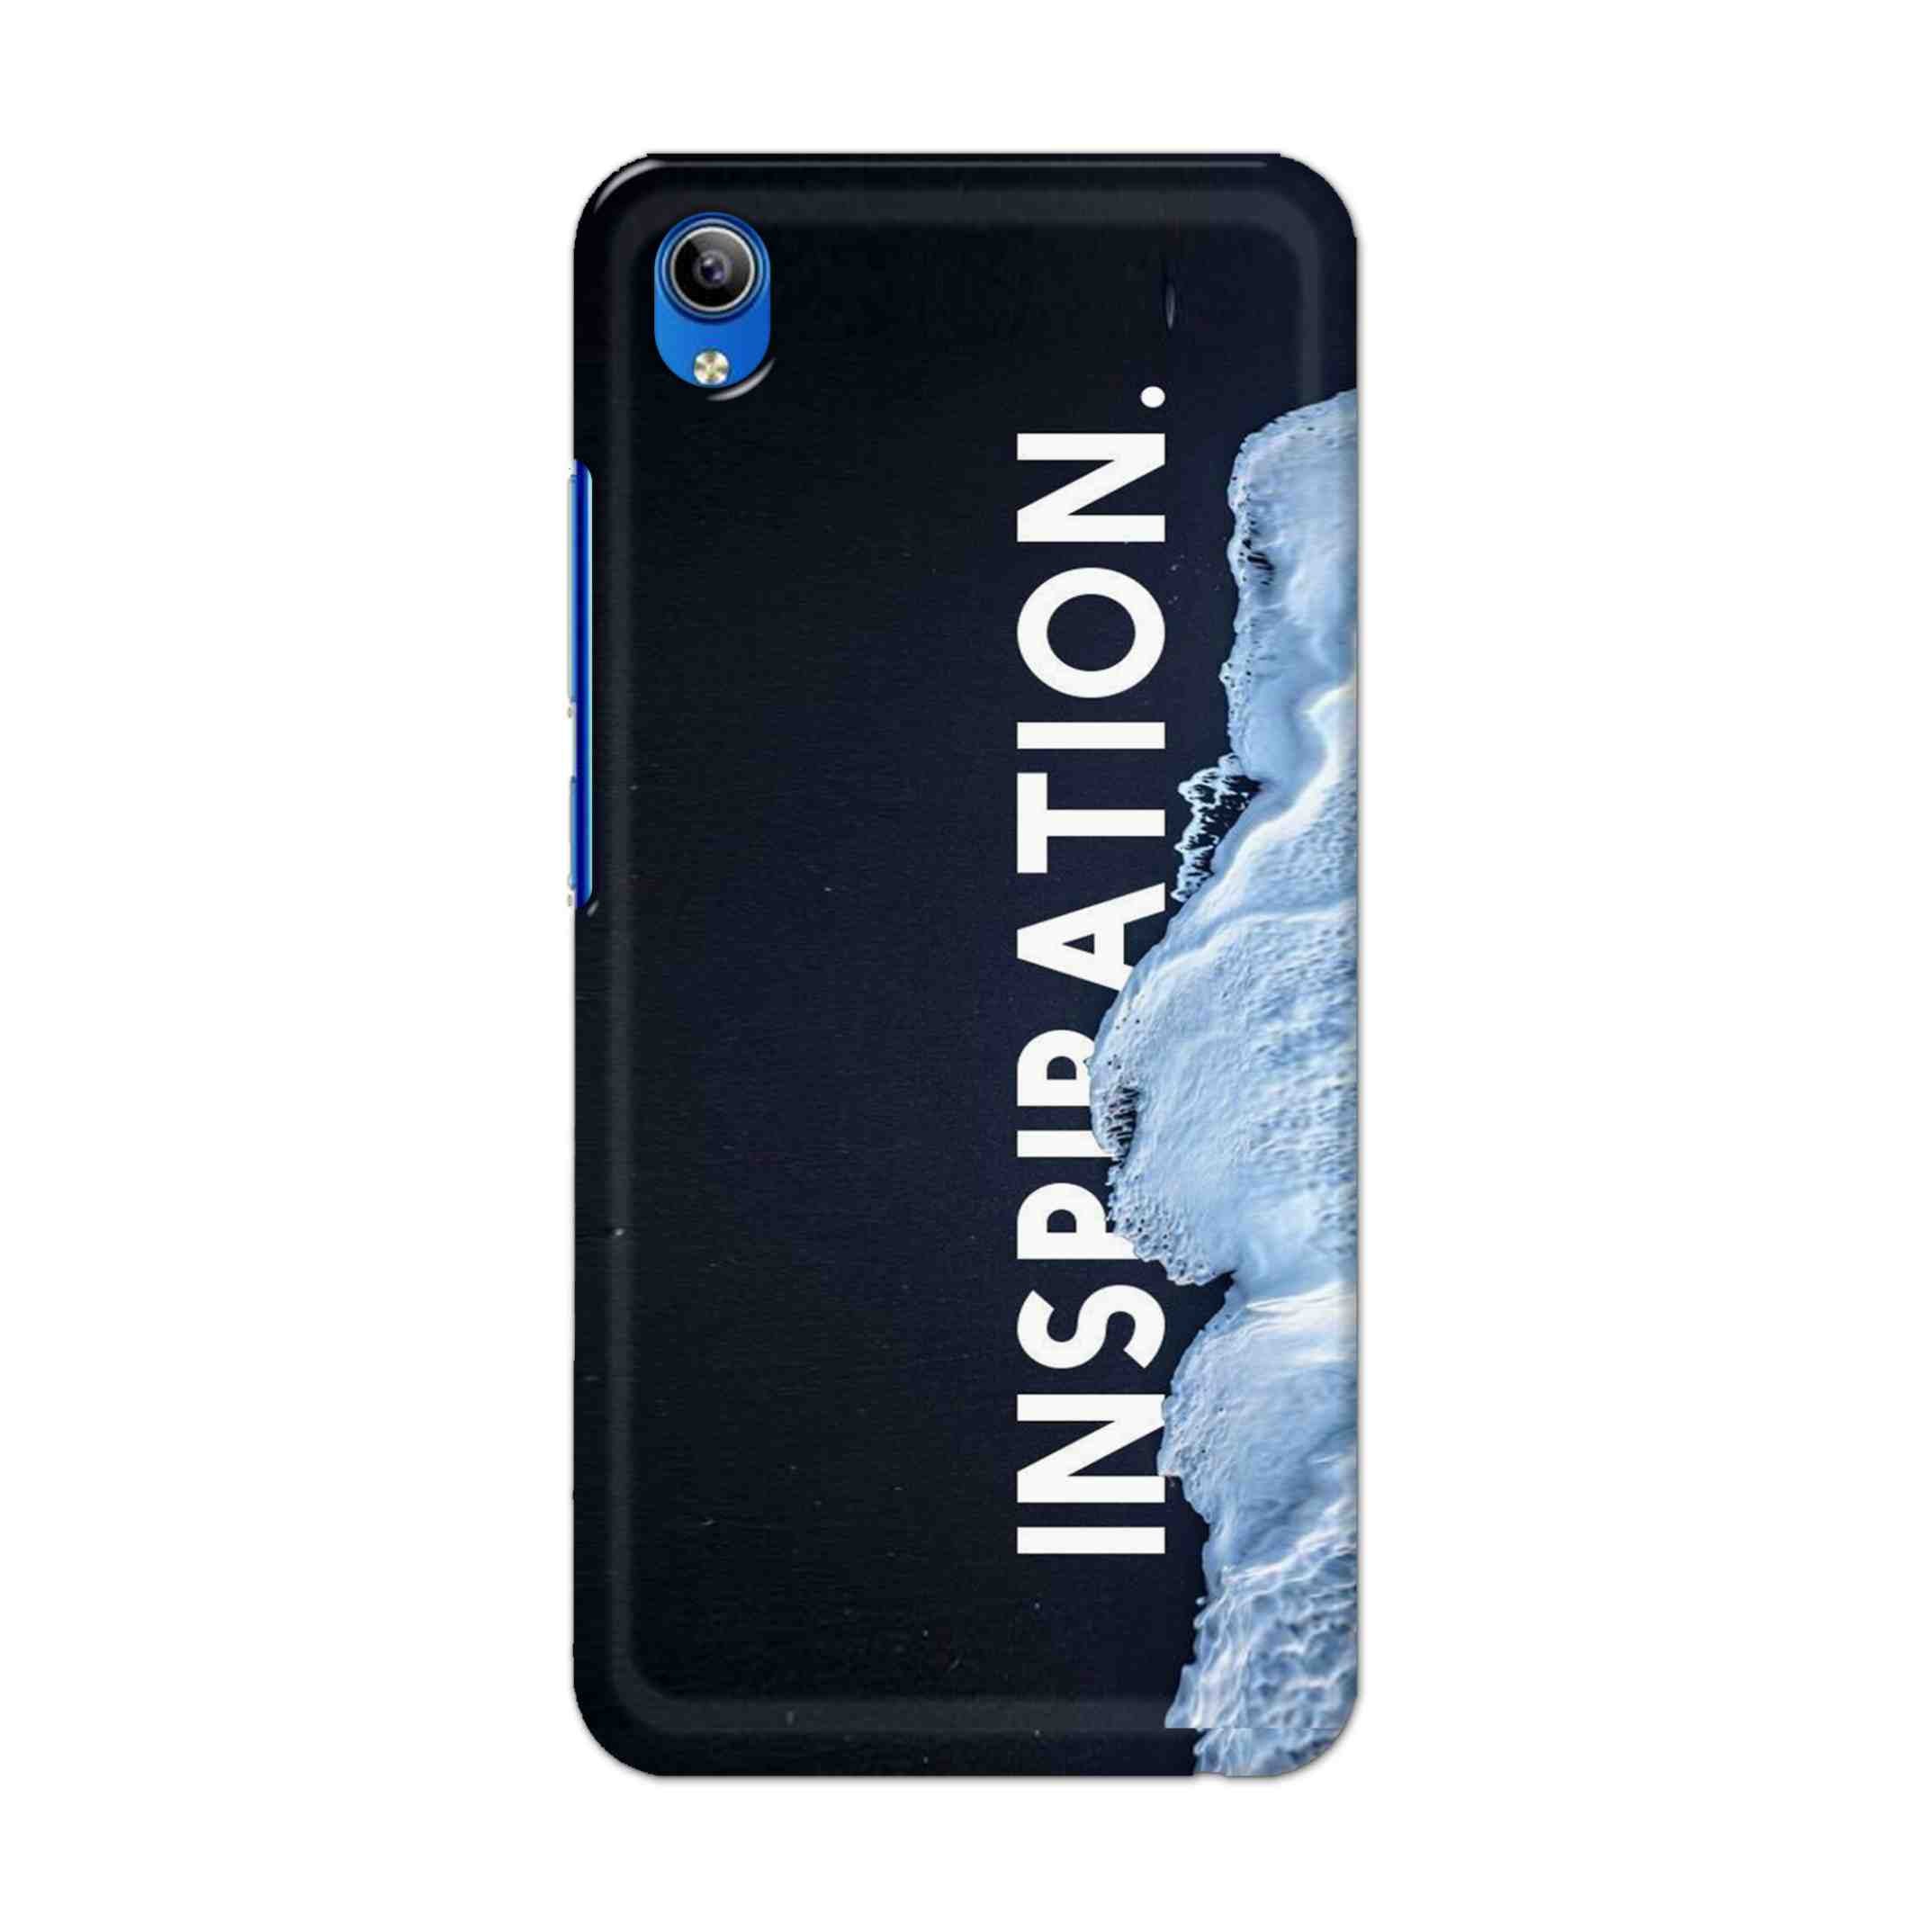 Buy Inspiration Hard Back Mobile Phone Case Cover For Vivo Y91i Online